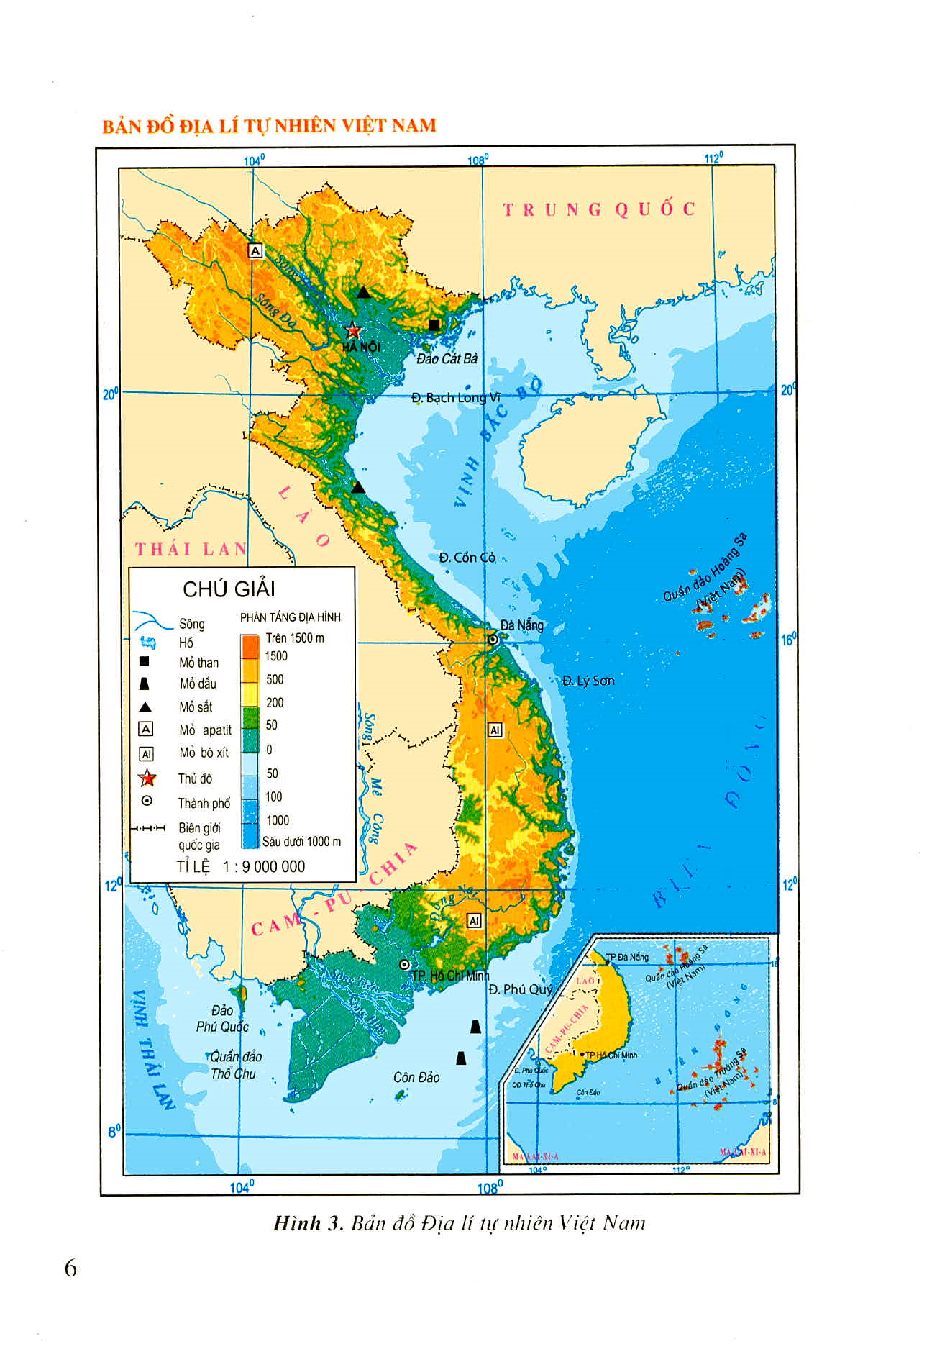 Sự kết hợp giữa nội dung kiến thức và hình ảnh sống động sẽ giúp các em học sinh hiểu rõ hơn về địa hình, tài nguyên thiên nhiên của đất nước Việt Nam\